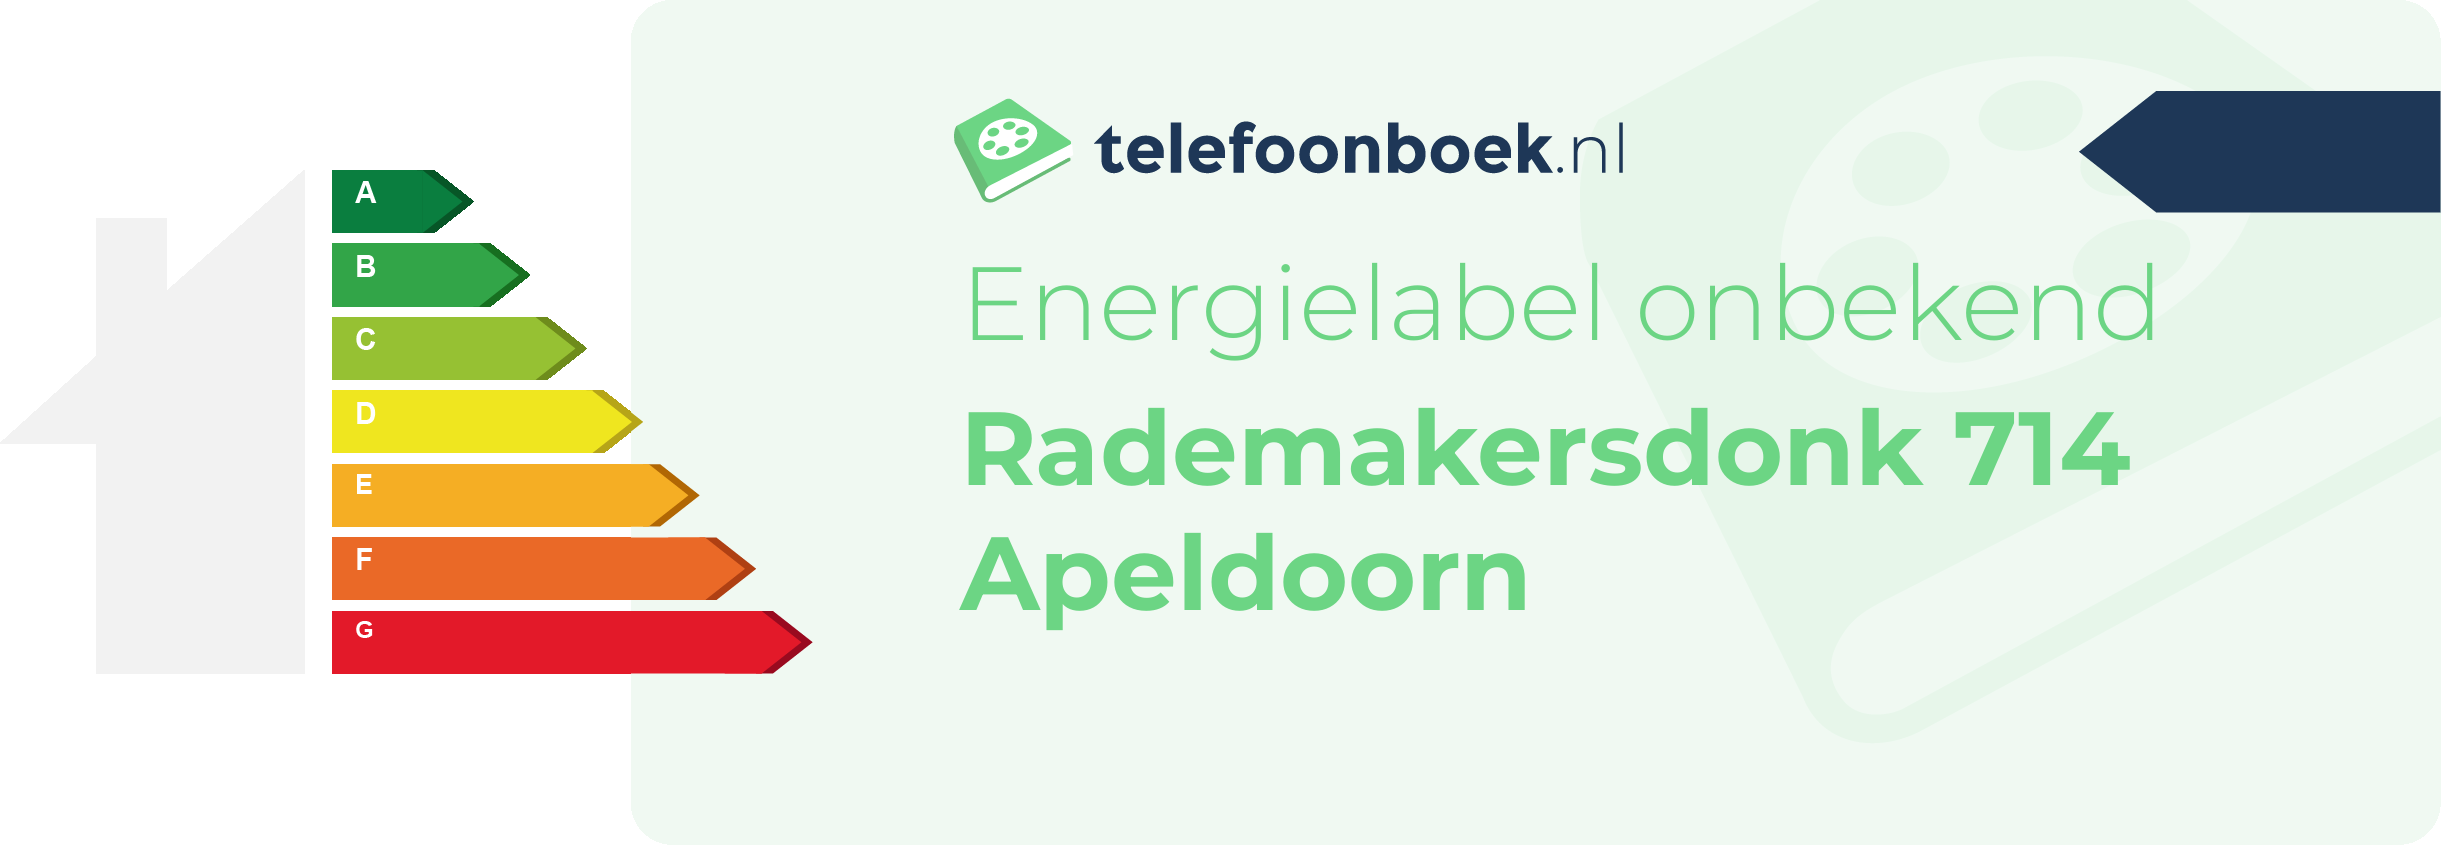 Energielabel Rademakersdonk 714 Apeldoorn